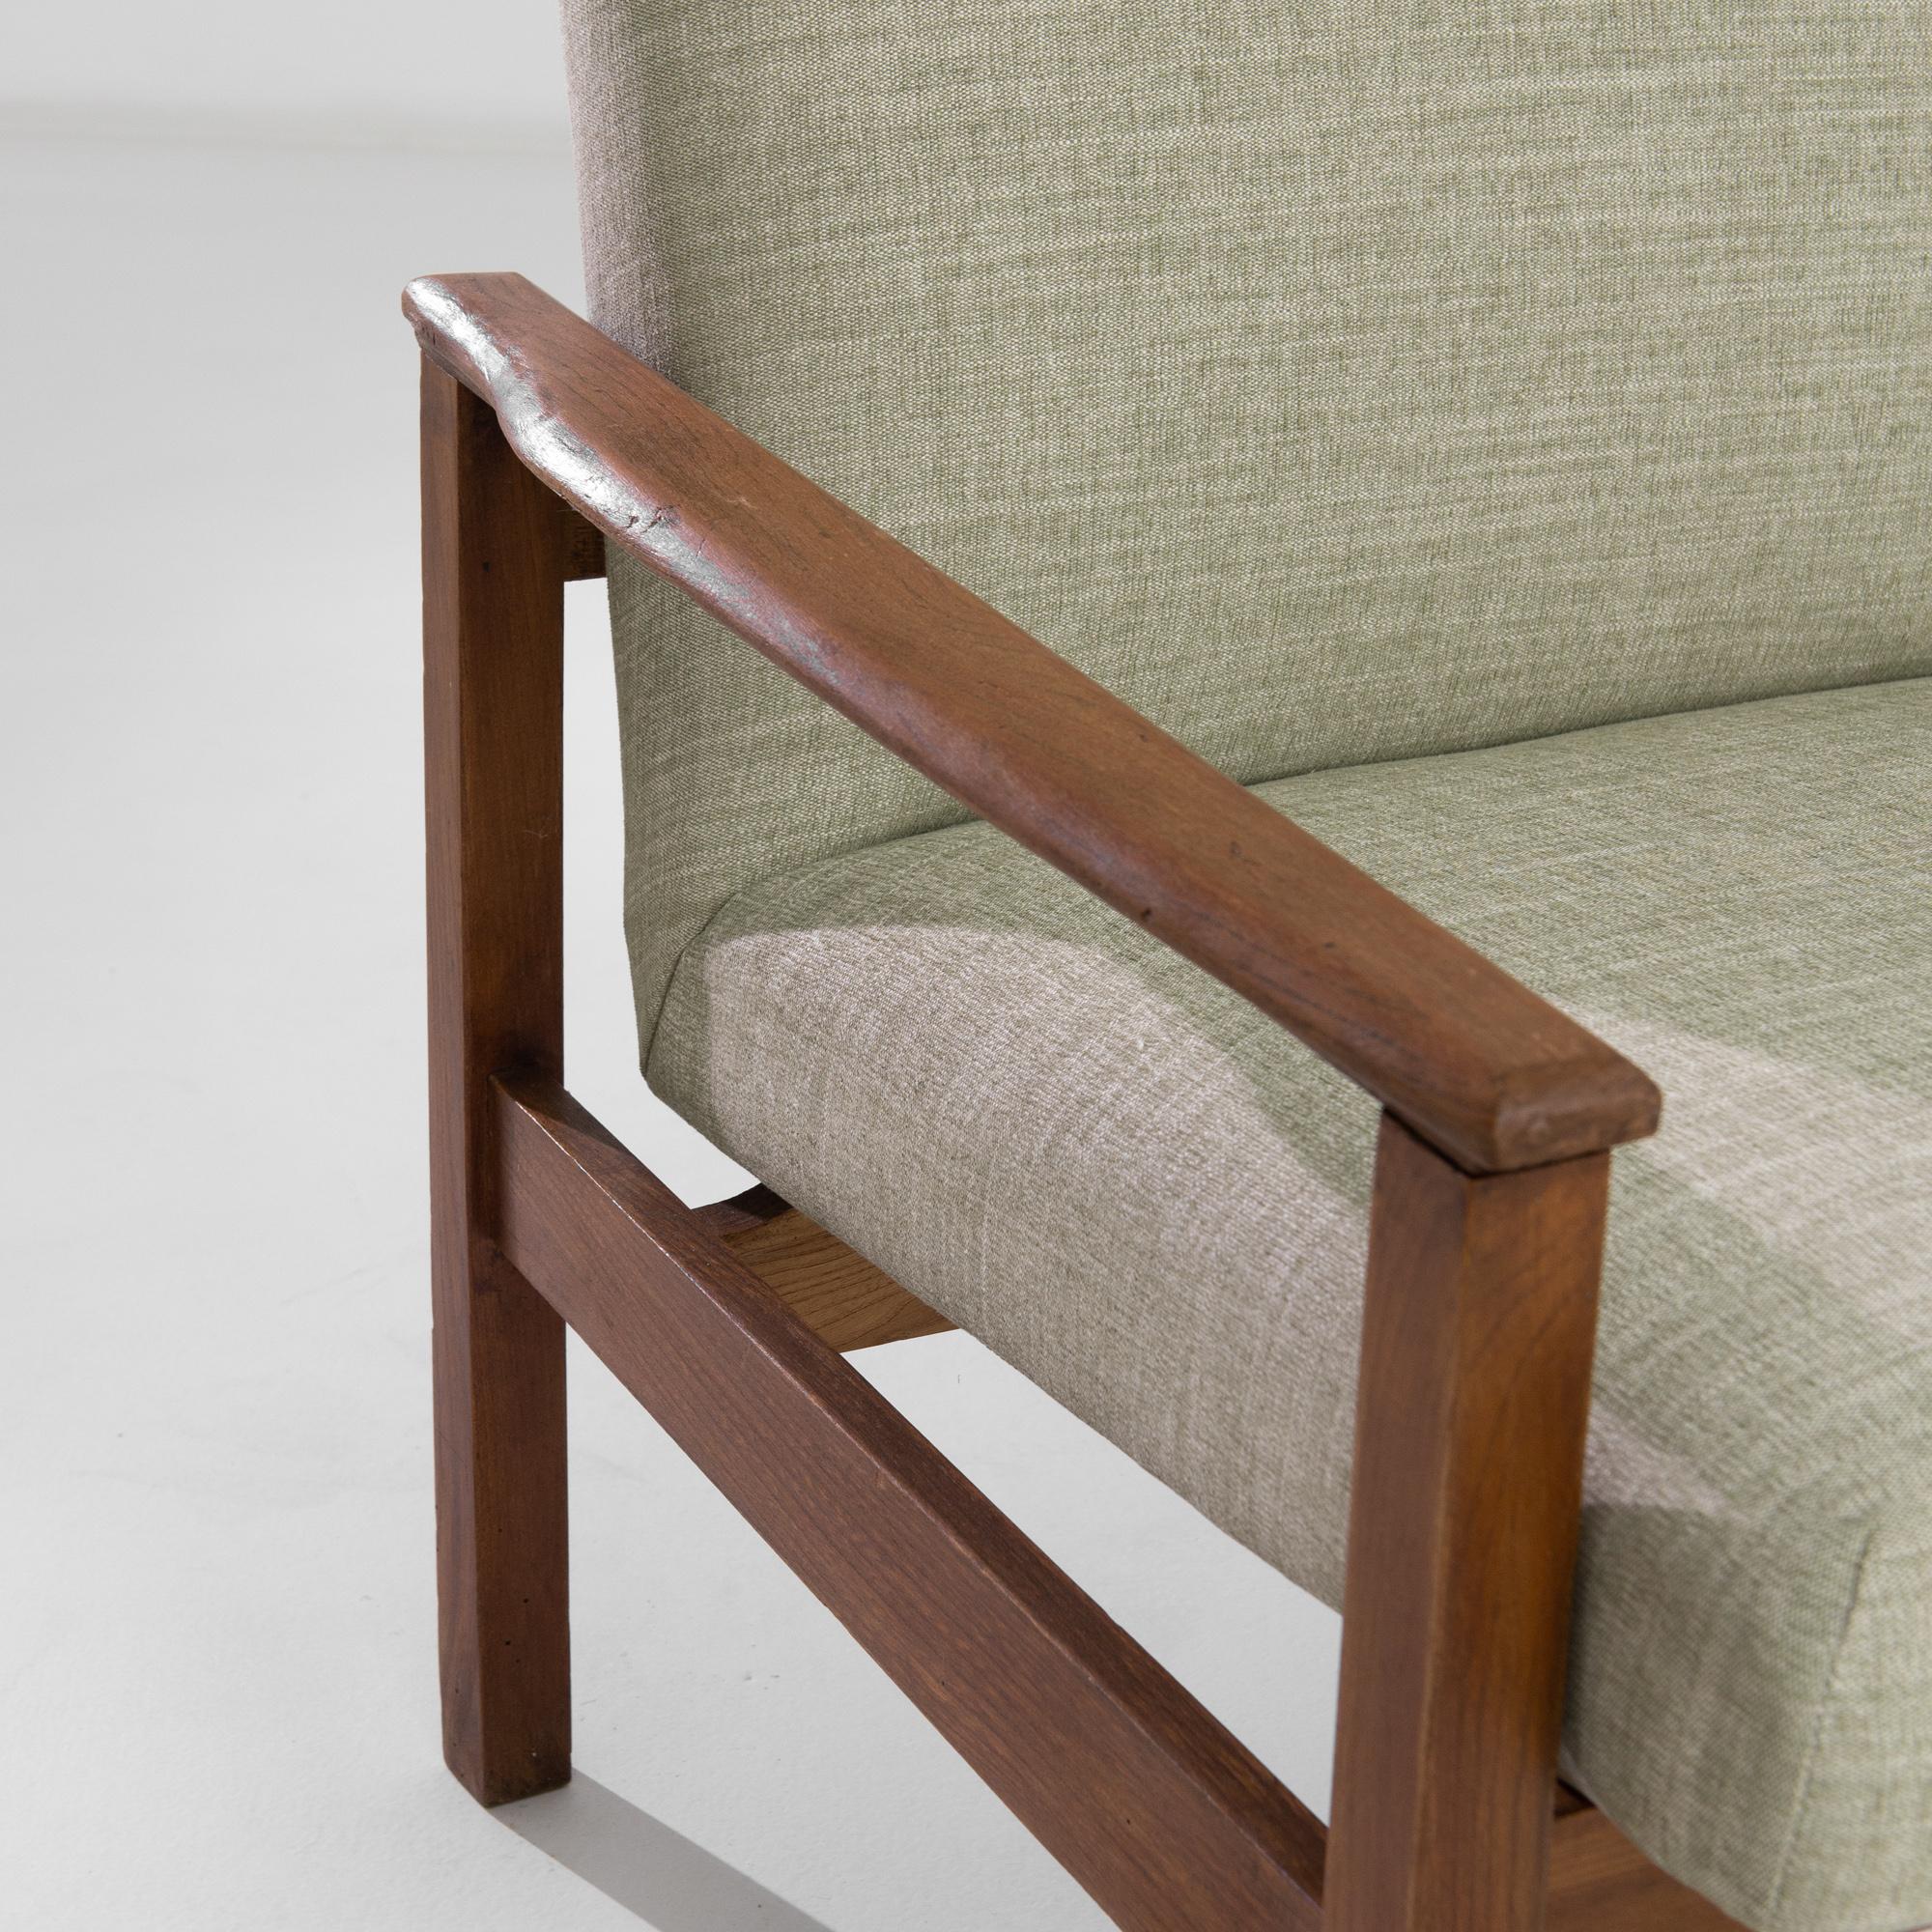 Dieses dänische Holzsesselpaar aus den 1970er Jahren verkörpert die Essenz des skandinavischen Designs - minimalistisch, funktional und mühelos elegant. Die klaren Linien und warmen Holztöne vermitteln ein Gefühl von Ruhe und Schlichtheit, während